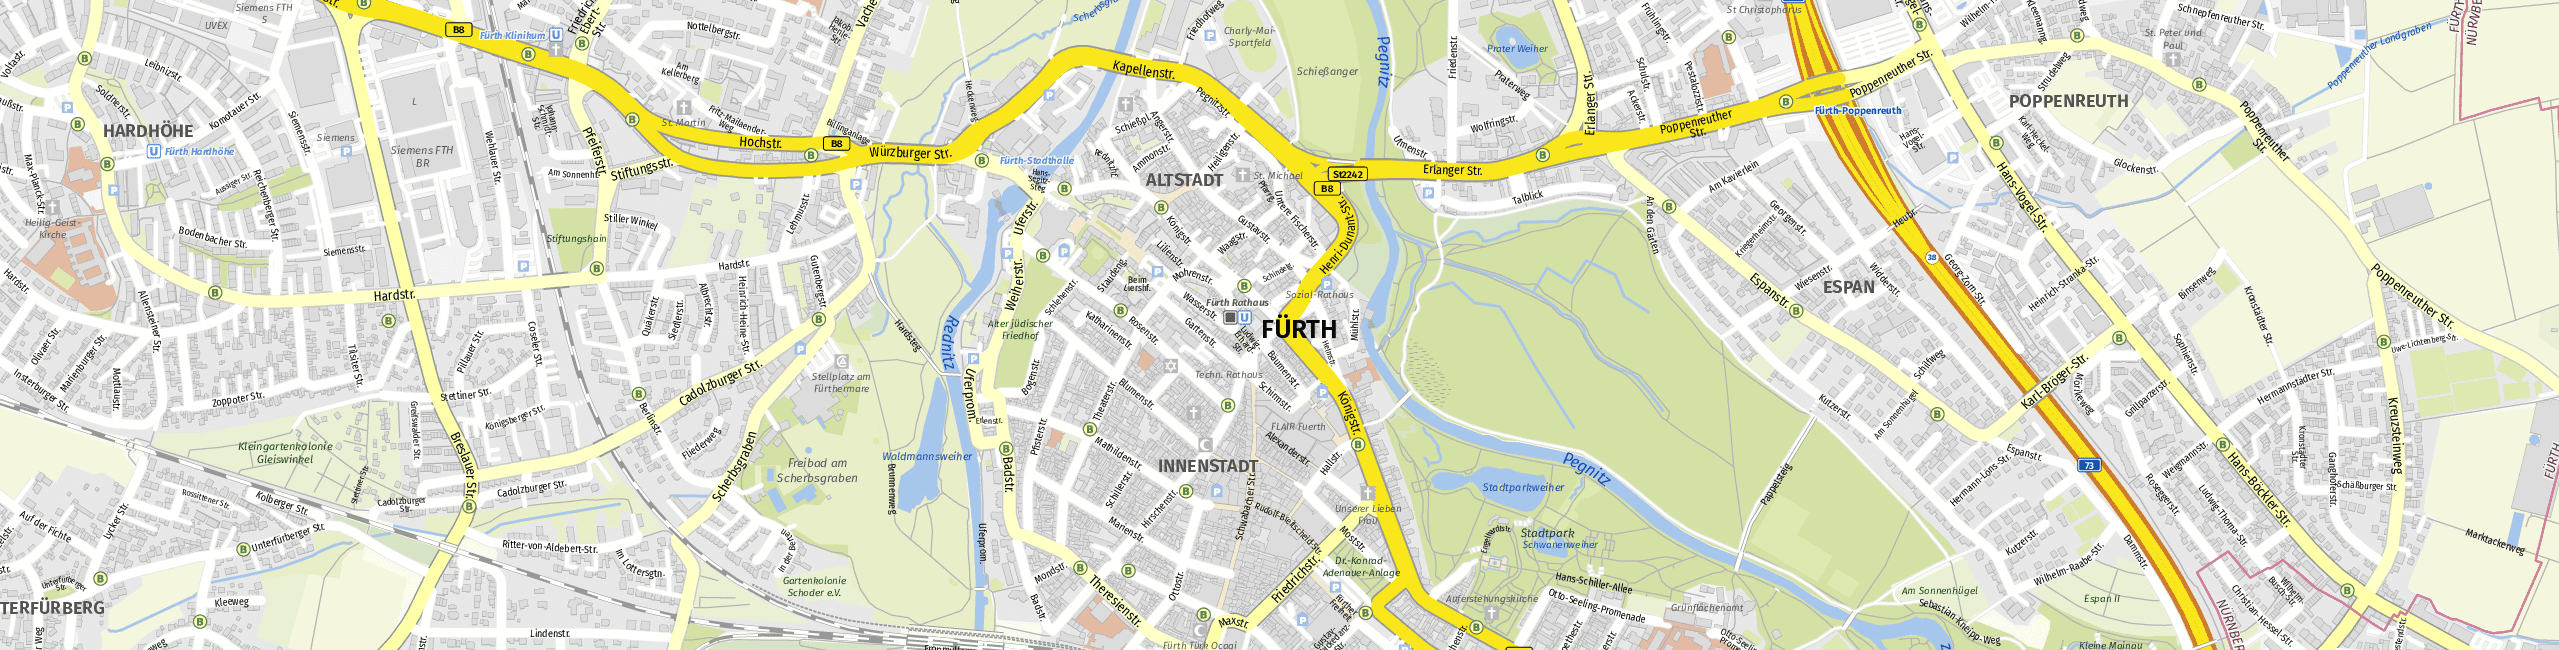 Stadtplan Fürth zum Downloaden.